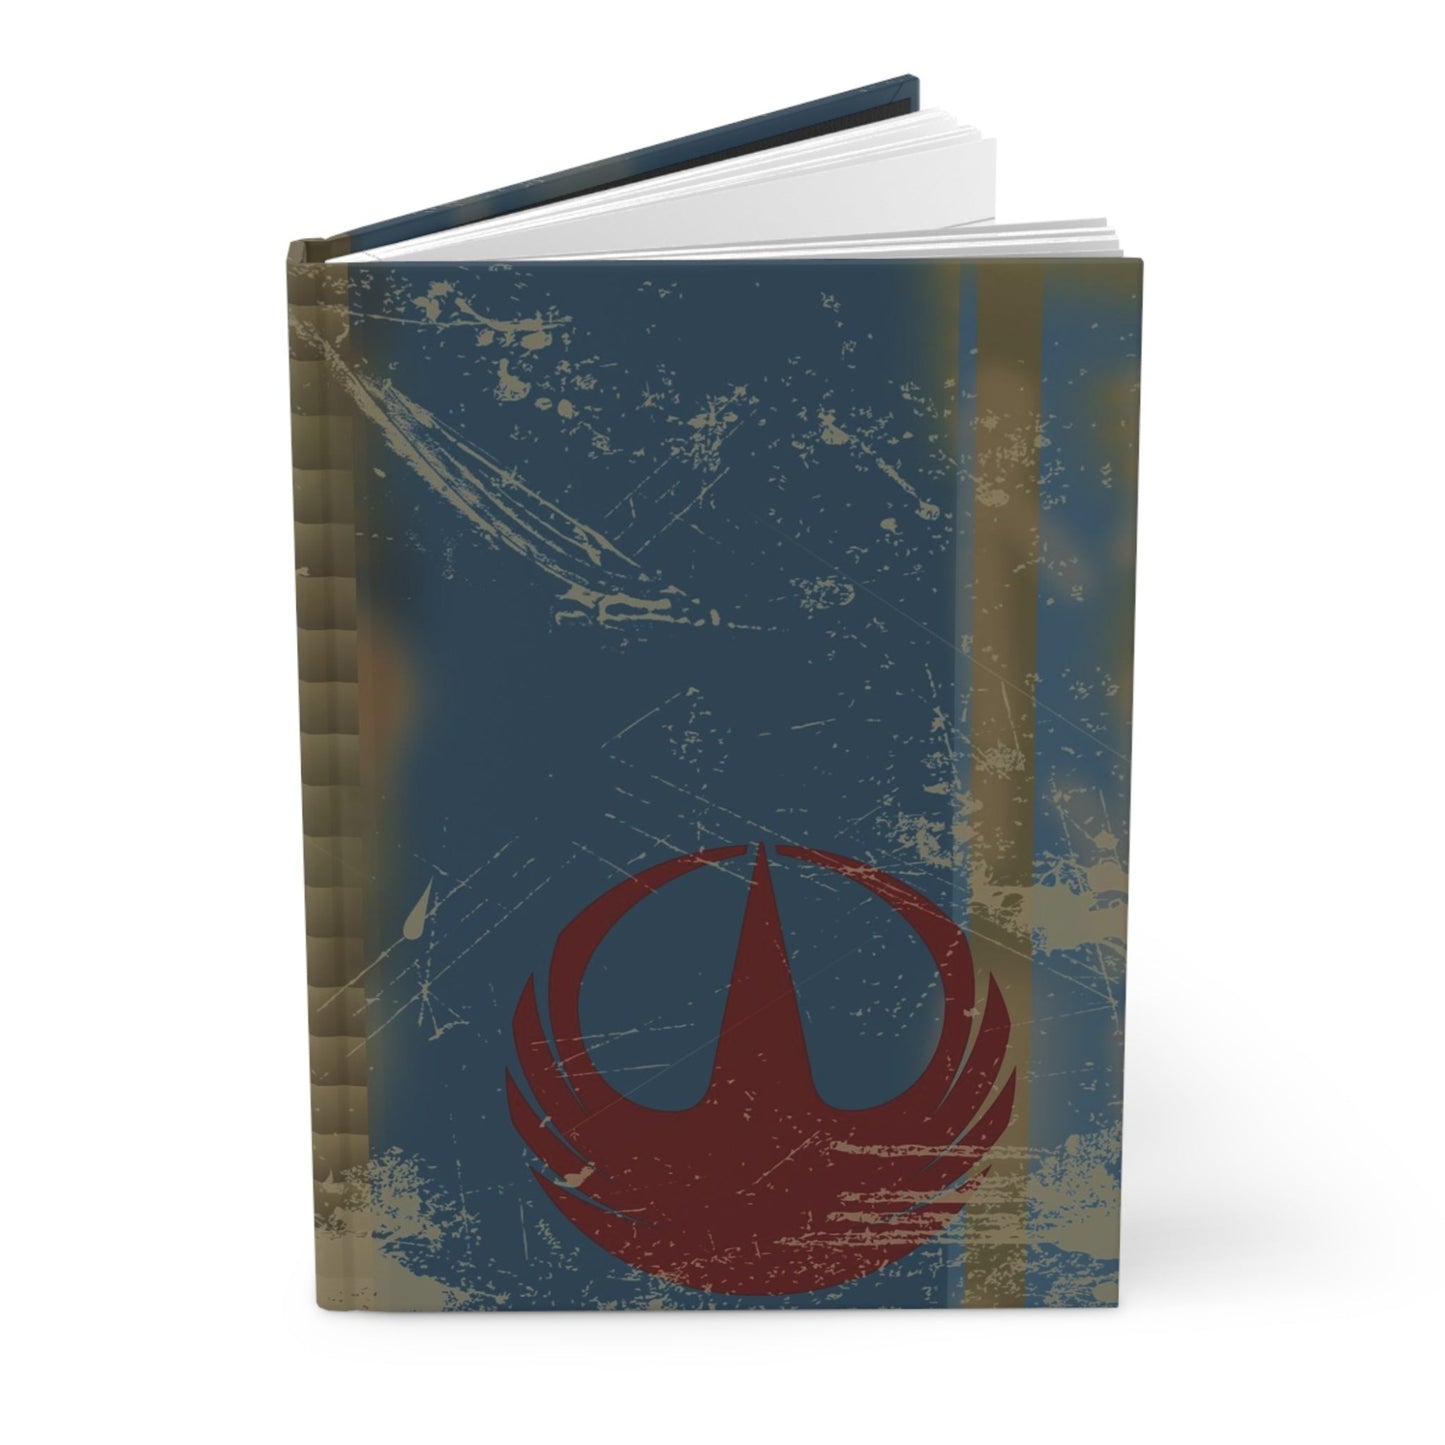 Rogue One Notebook // Hardcover Journal Matte